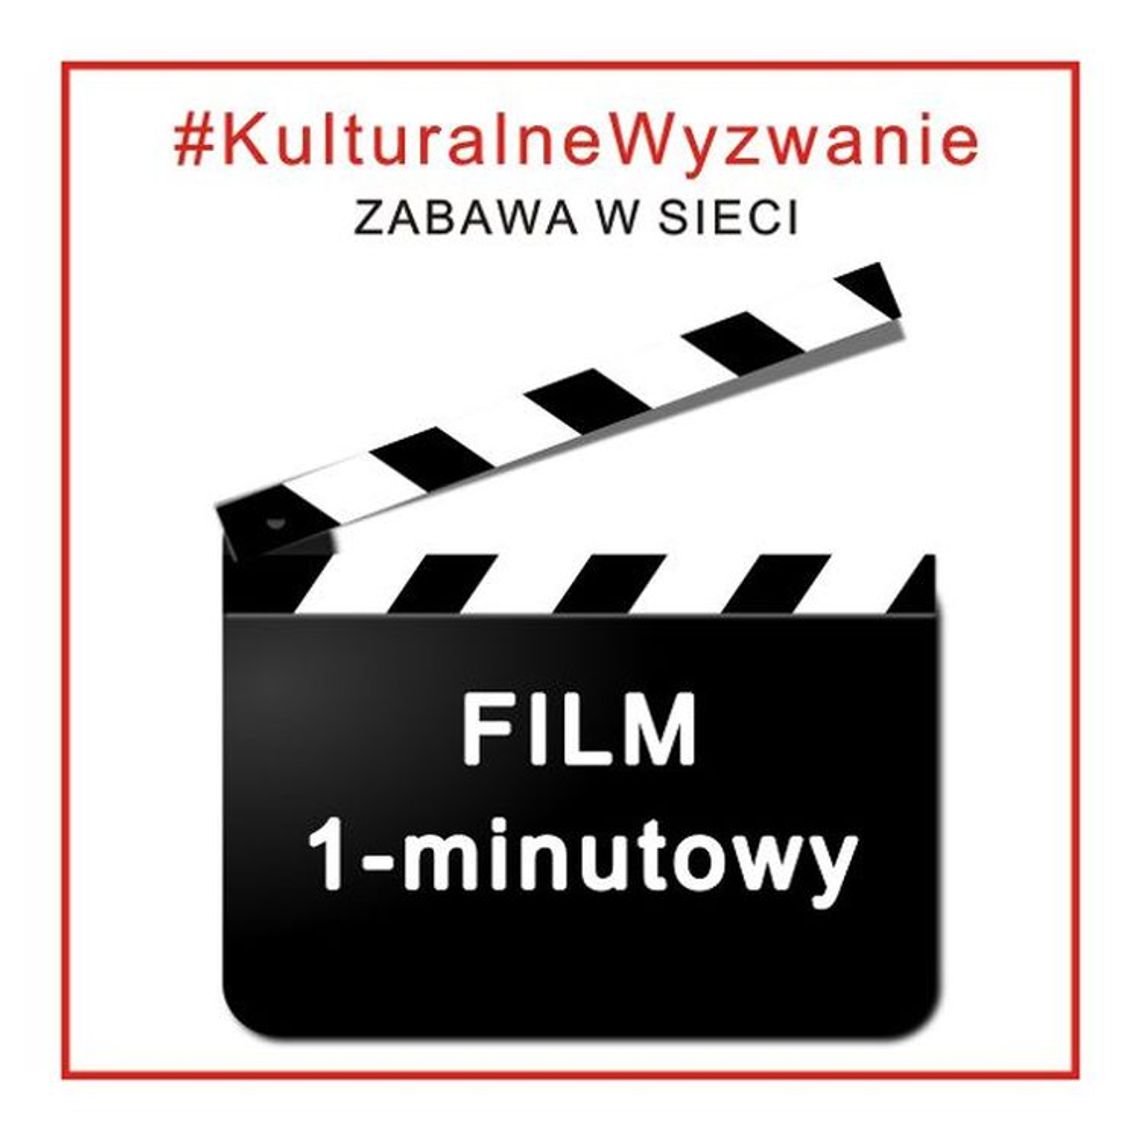 CKiS  do udziału w kolejnym #KulturalnymWyzwaniu - FILM 1- minutowy. 